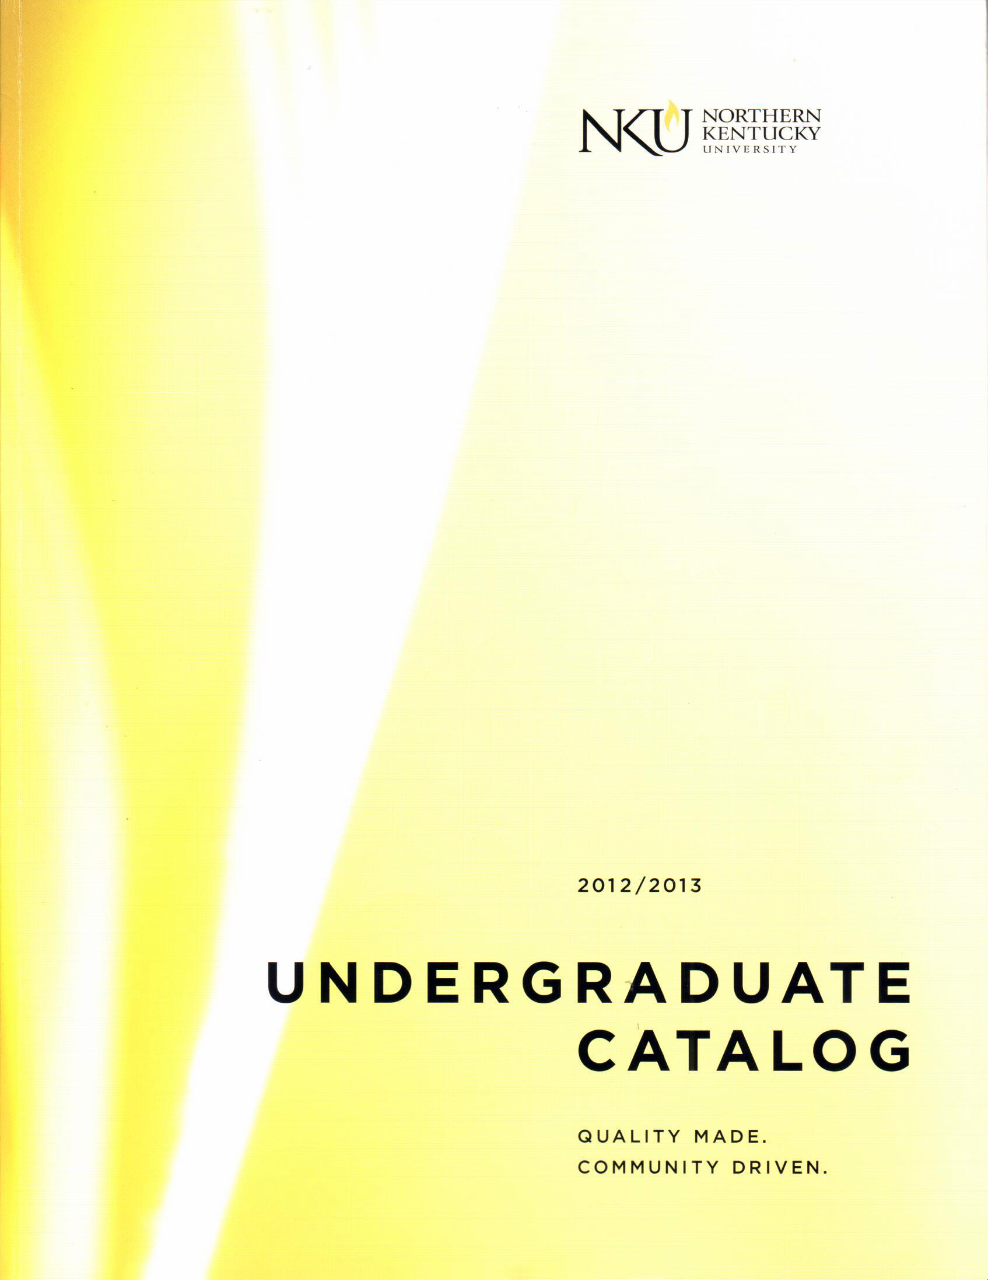 2013-2014 undergraduate catalog 